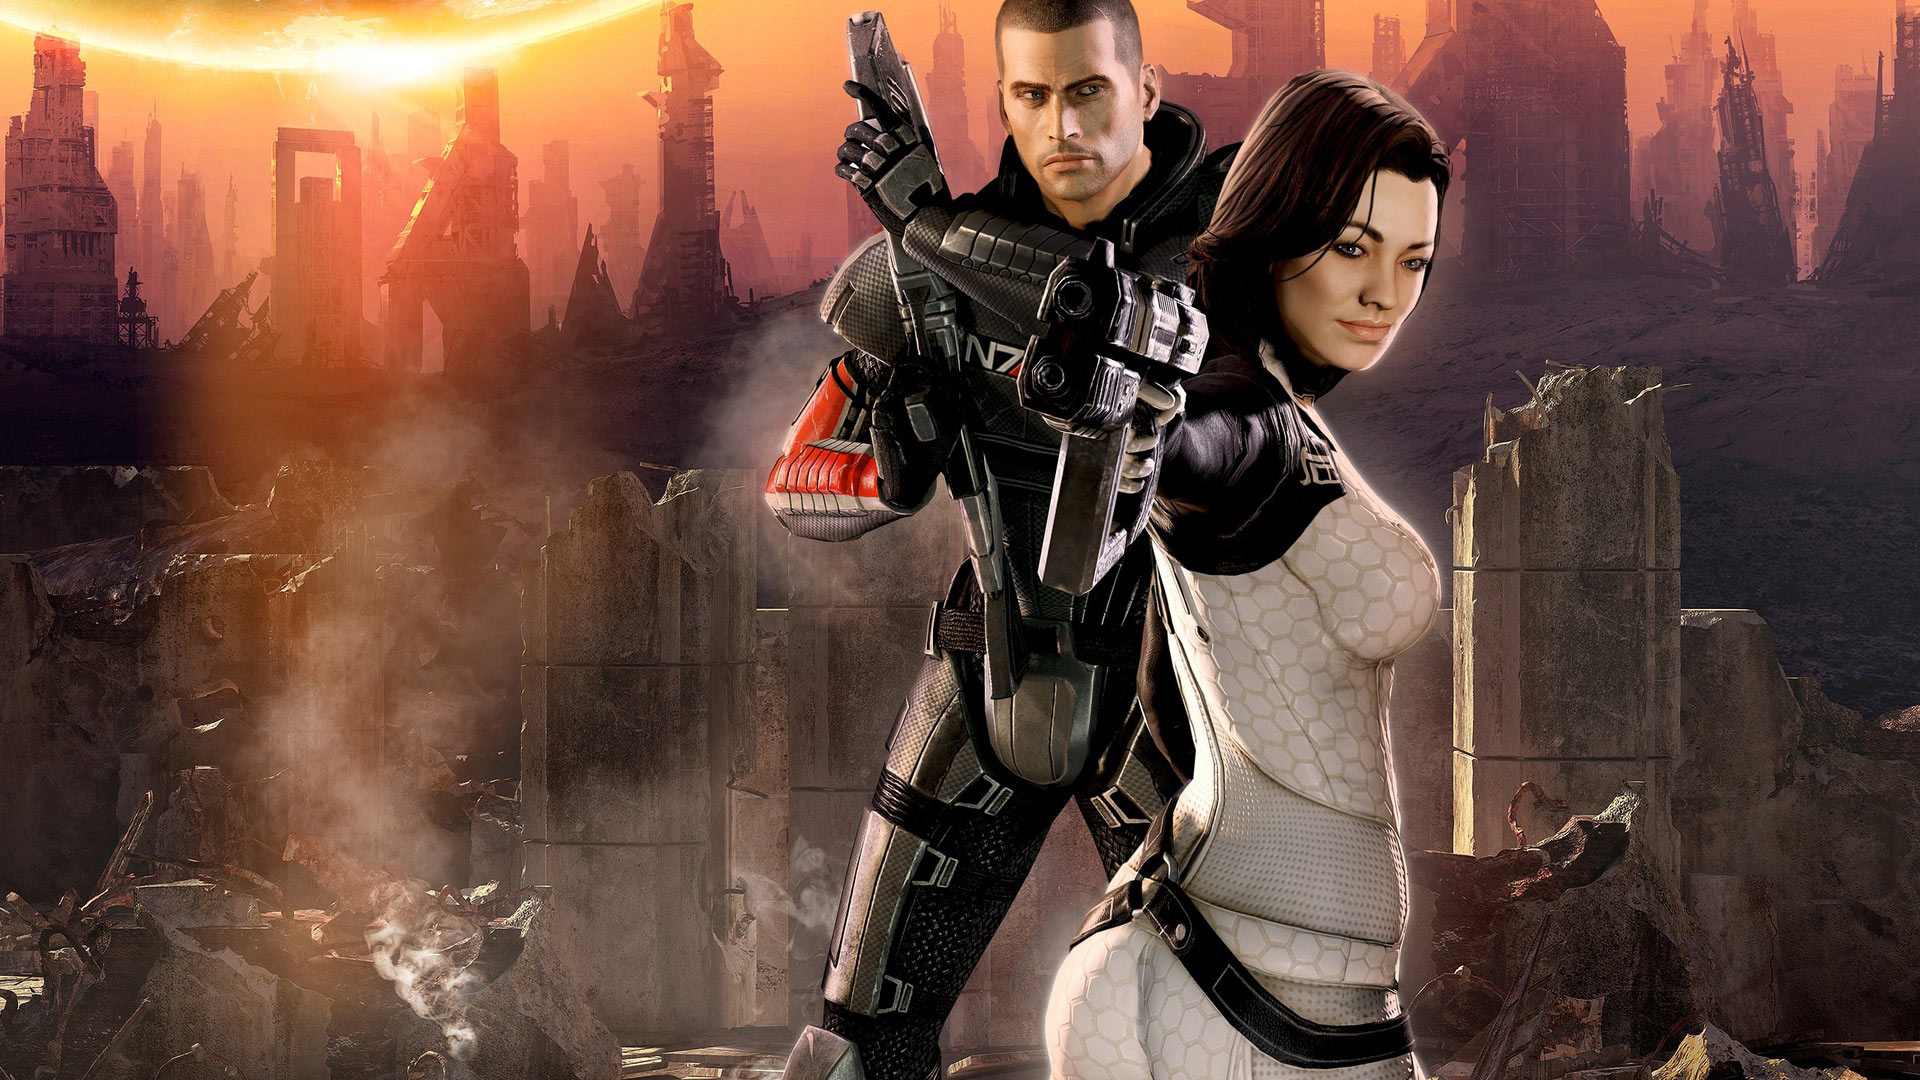 Mass Effect 2: Arrival, Mass Effect 2 wallpaper, Gaming, 1920x1080 Full HD Desktop